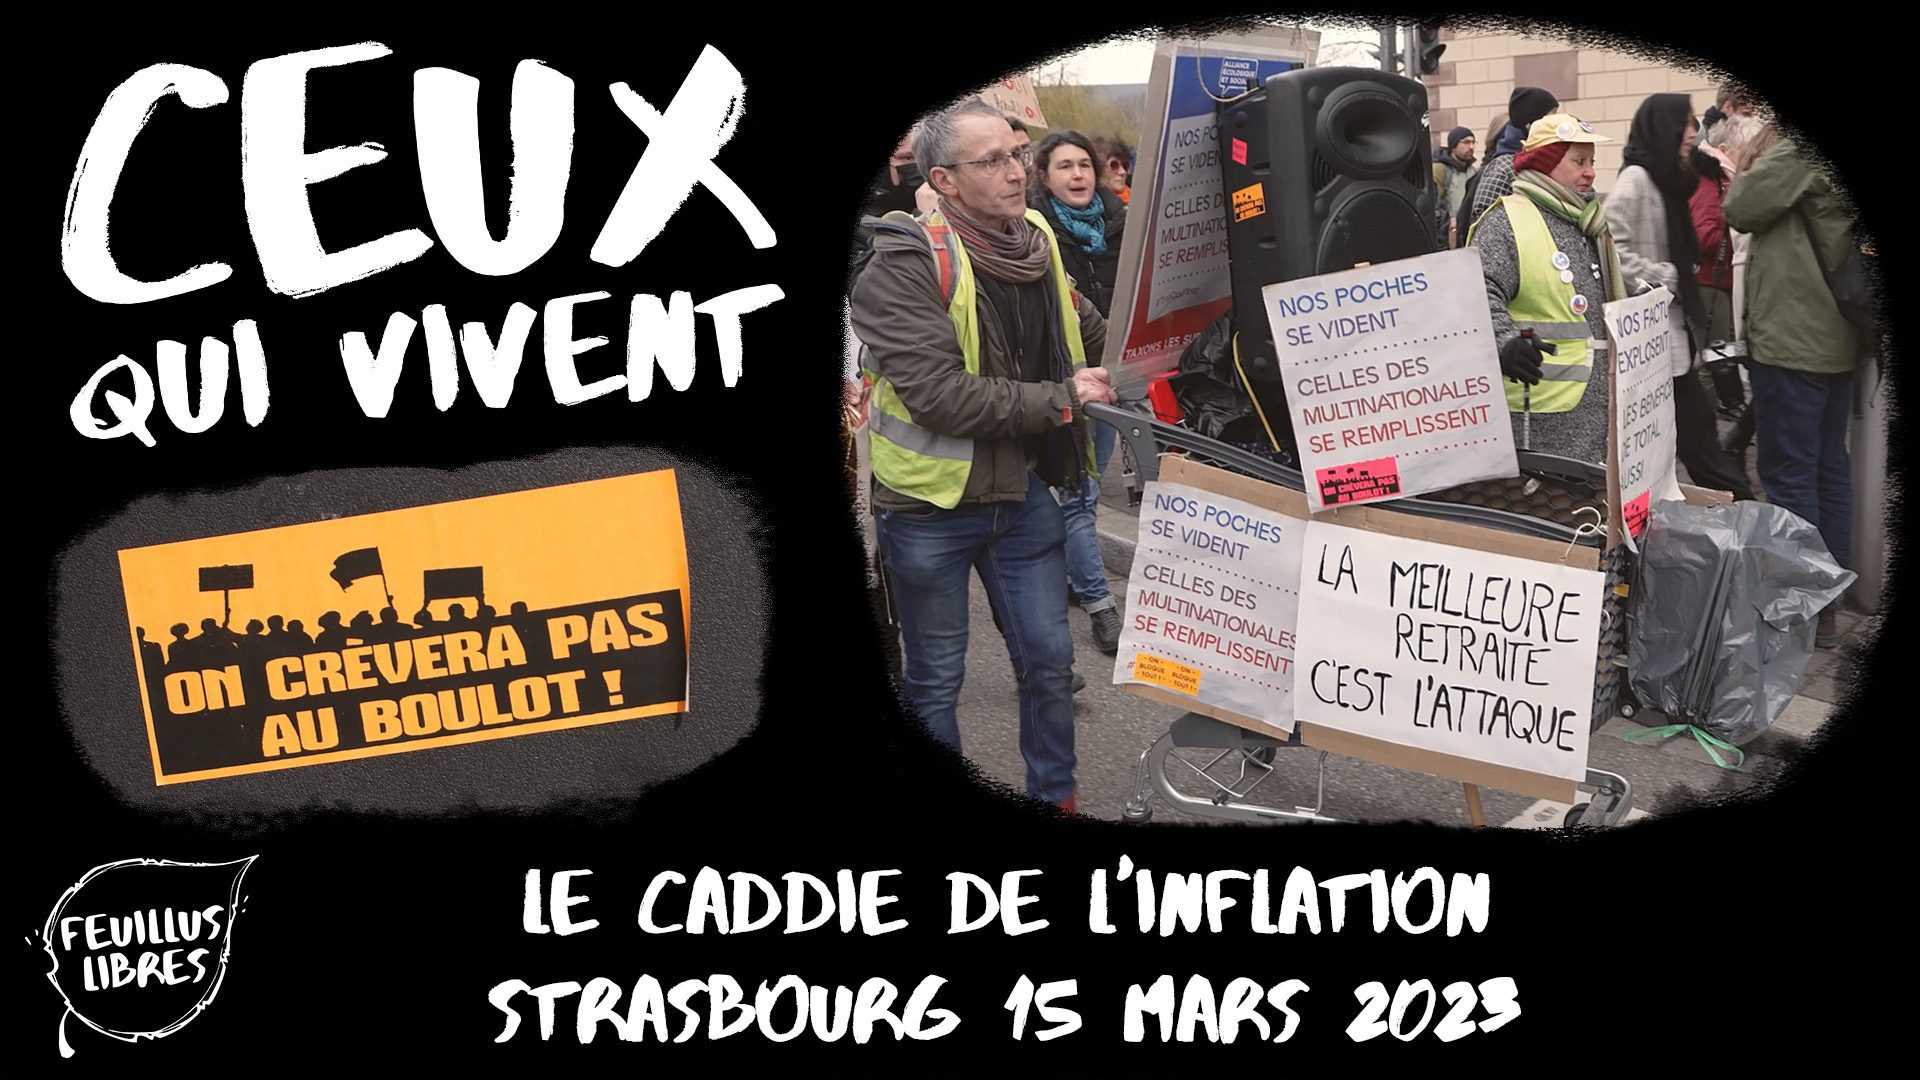 Le Caddie de l’Inflation – Strasbourg 15 Mars 2023 : image à la une